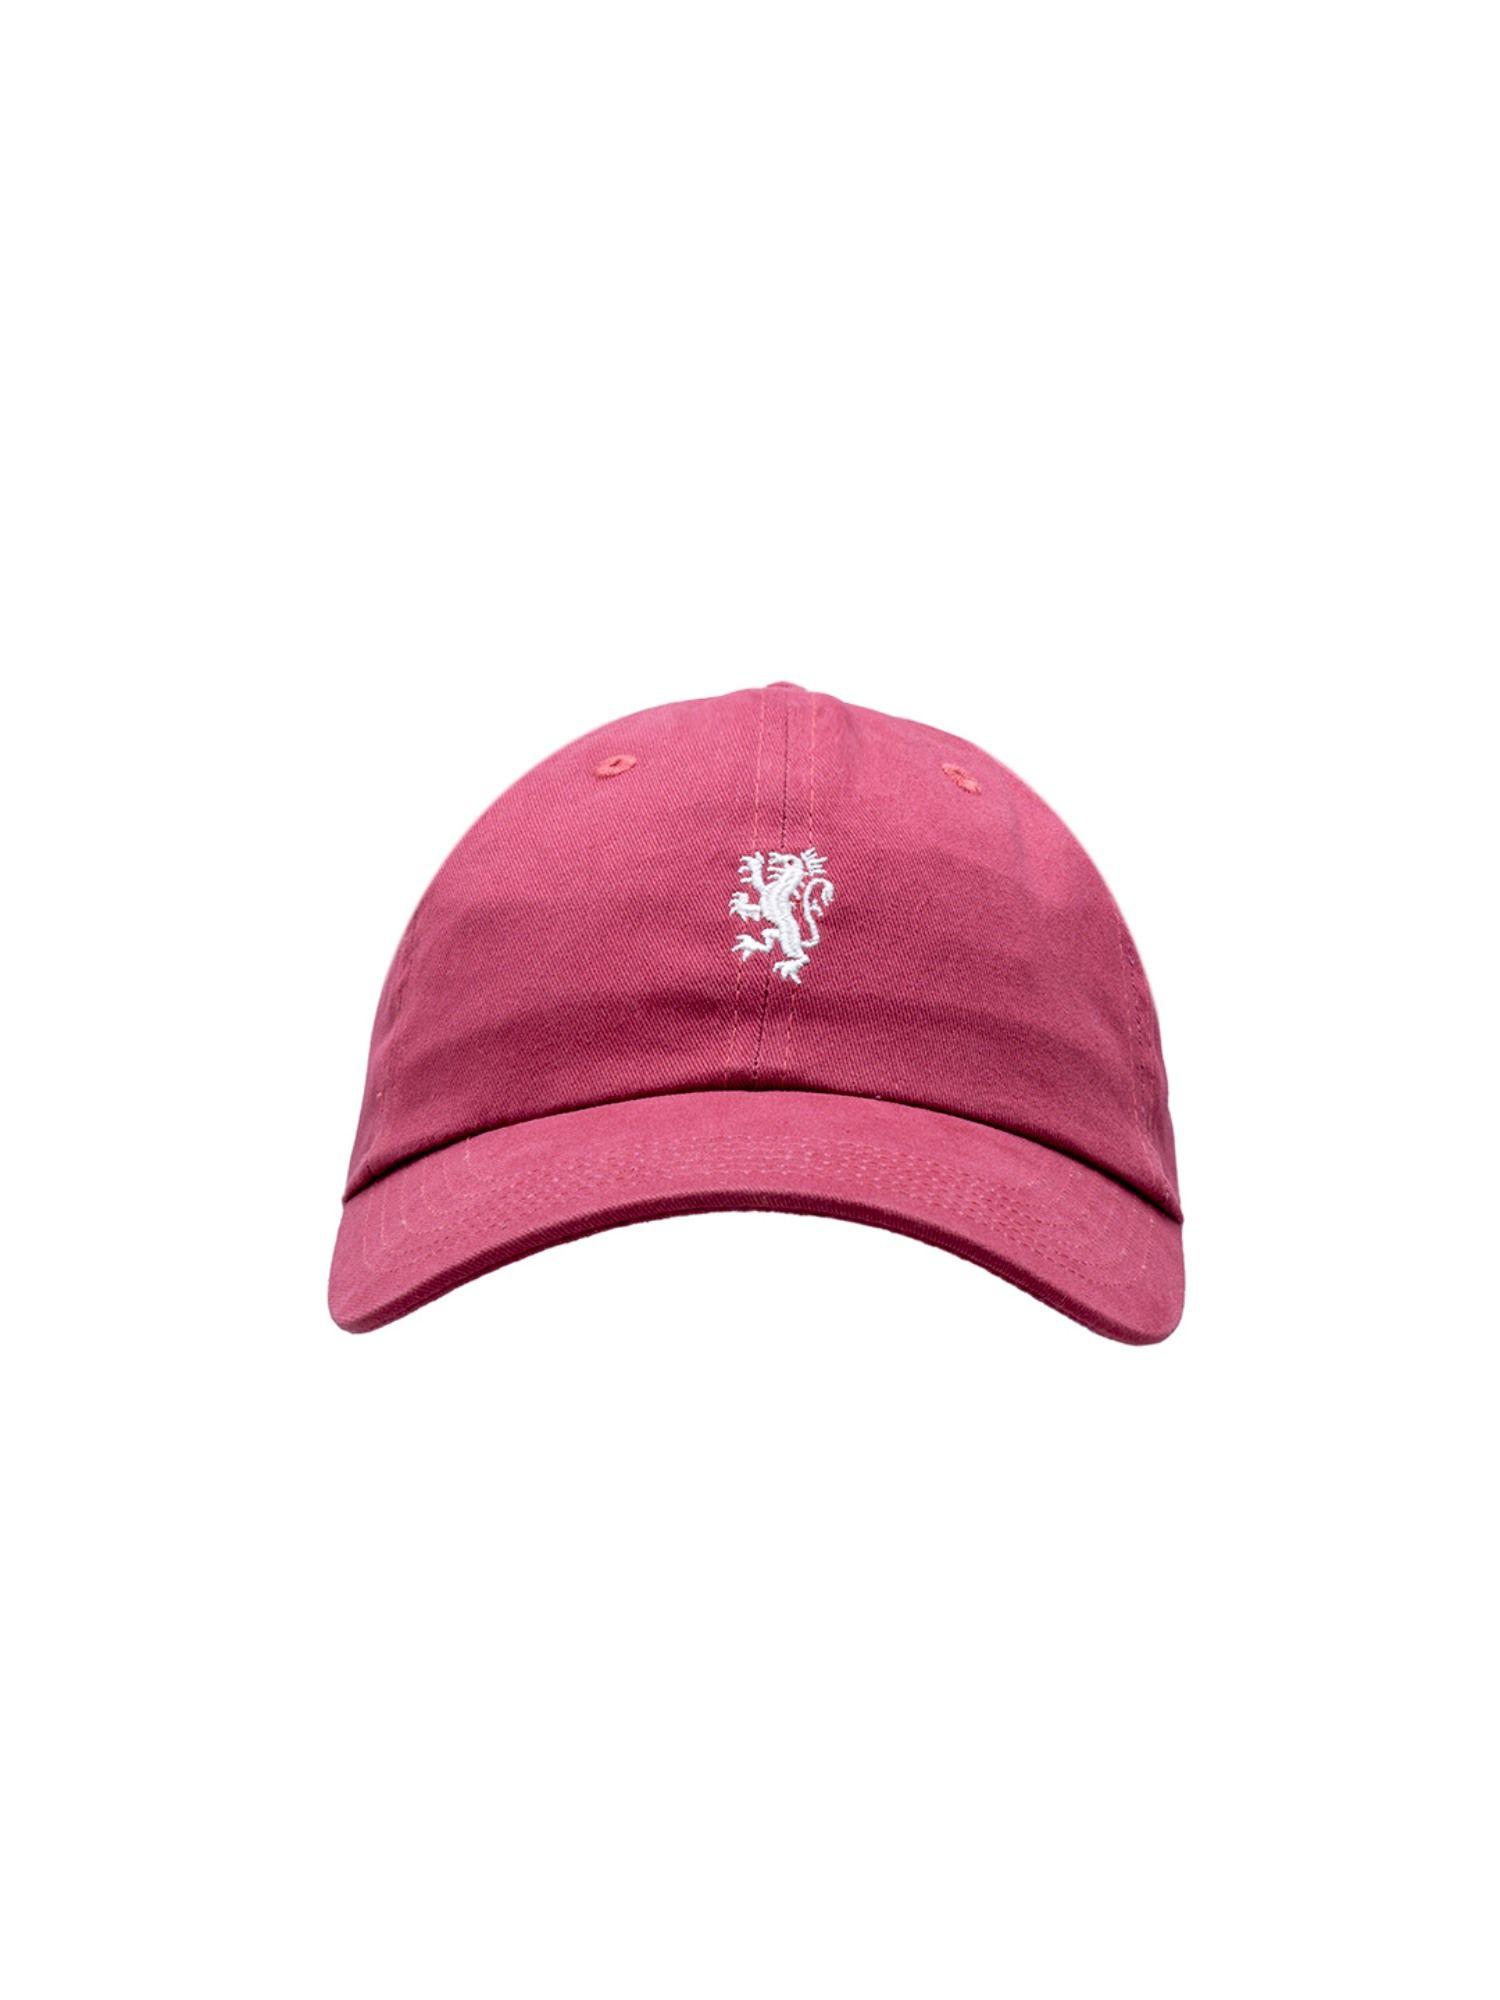 men dark pink free size cap